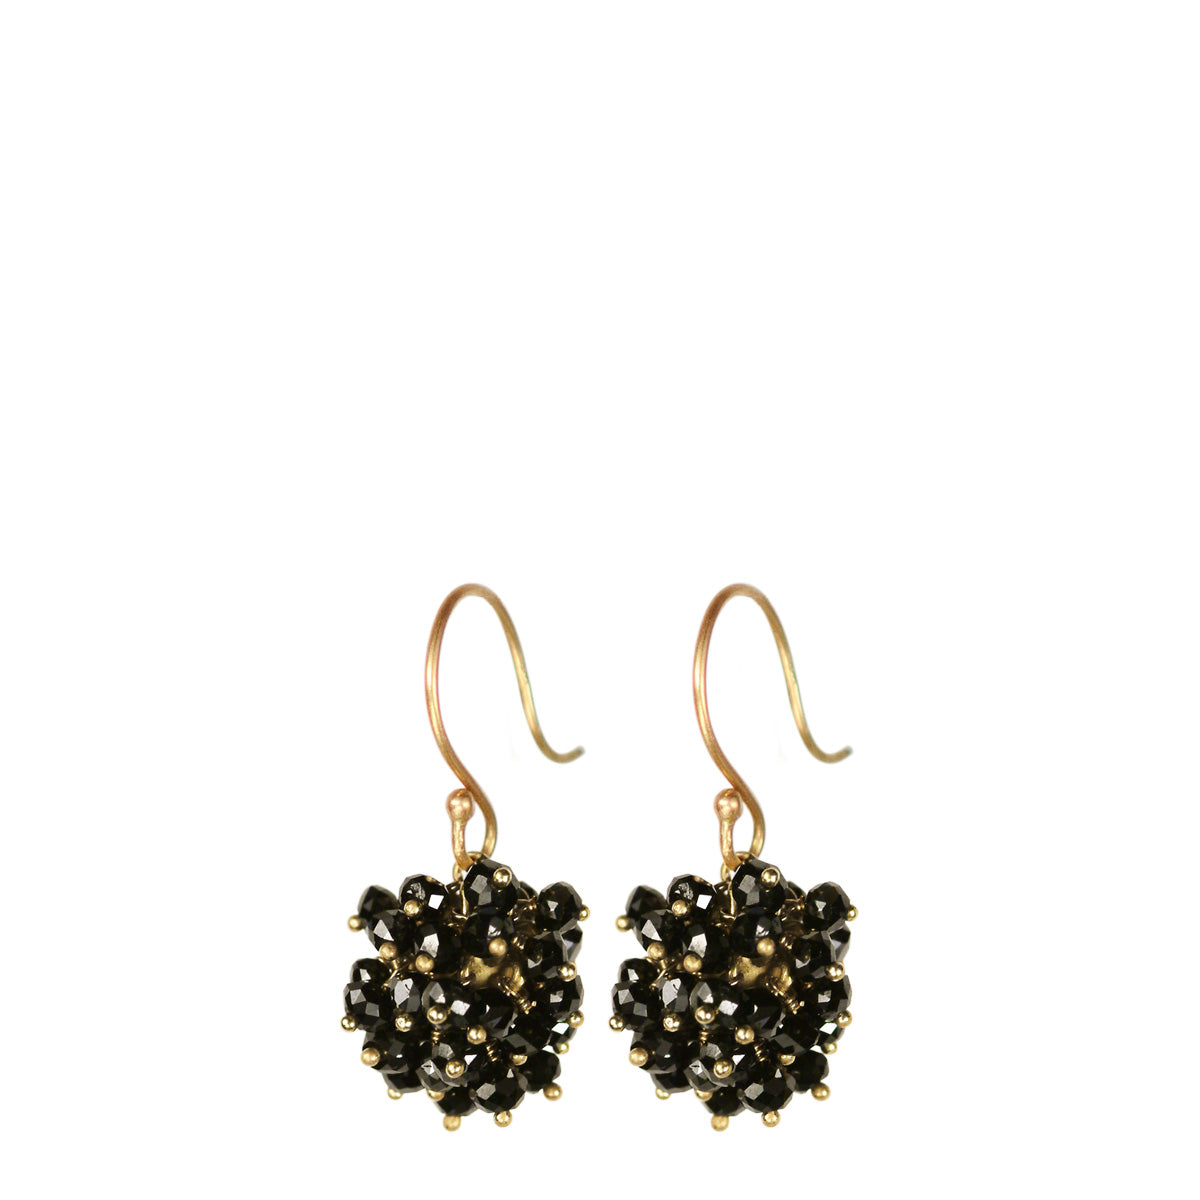 18K Gold All Black Diamond Bead Ball Earrings